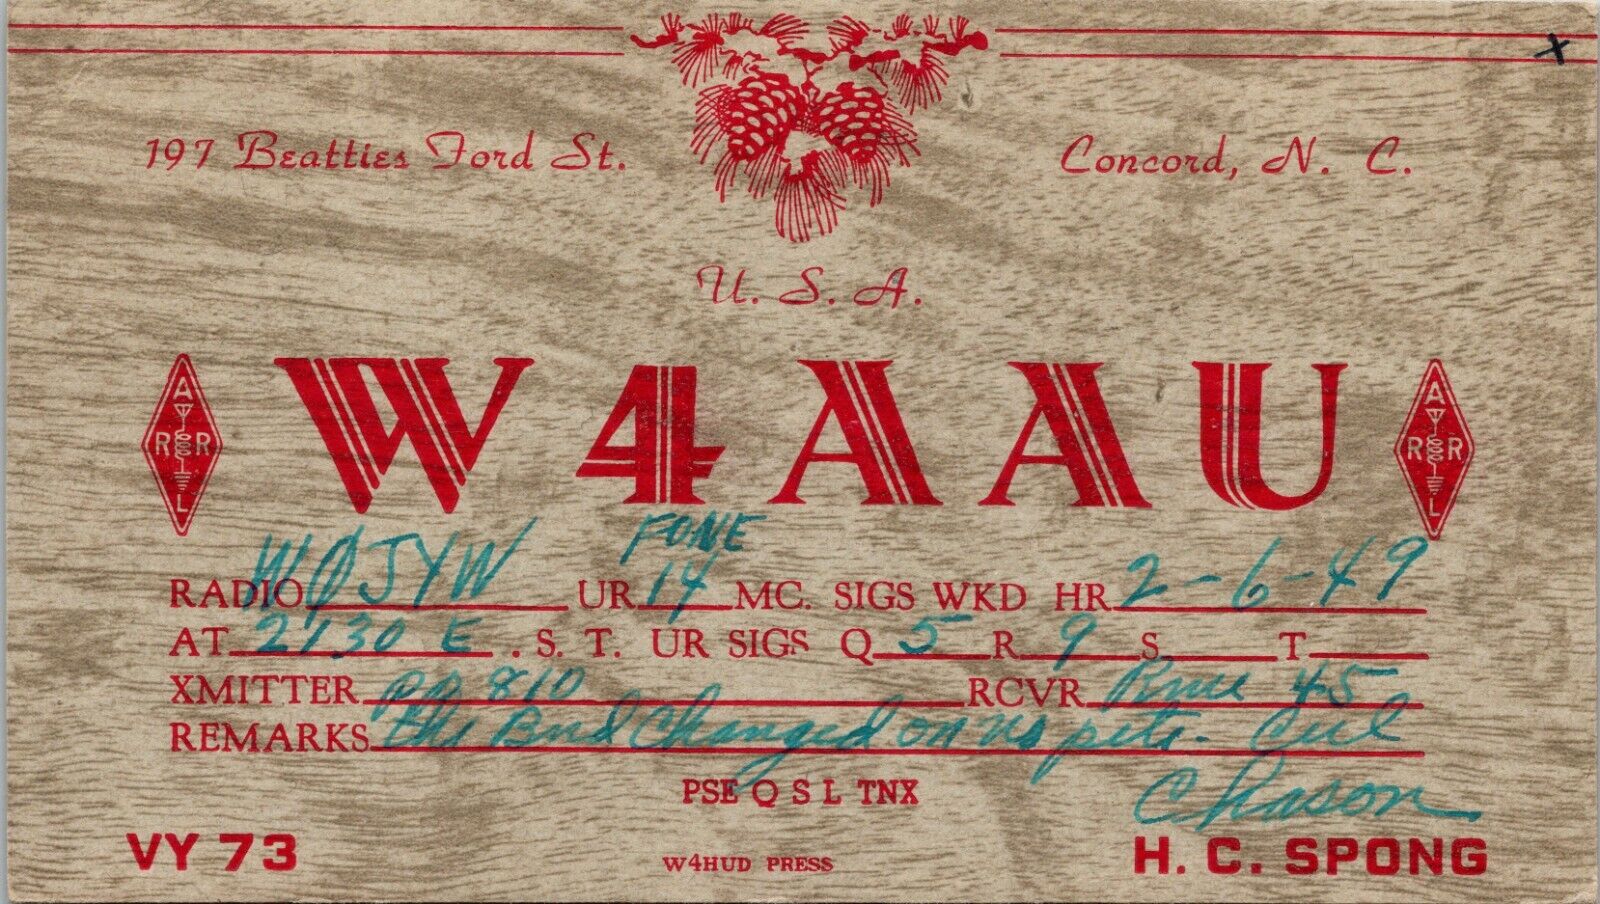 Vtg Ham Radio Cb Amateur Qsl Qso Card Postcard N Carolina W4aau Concord 1949